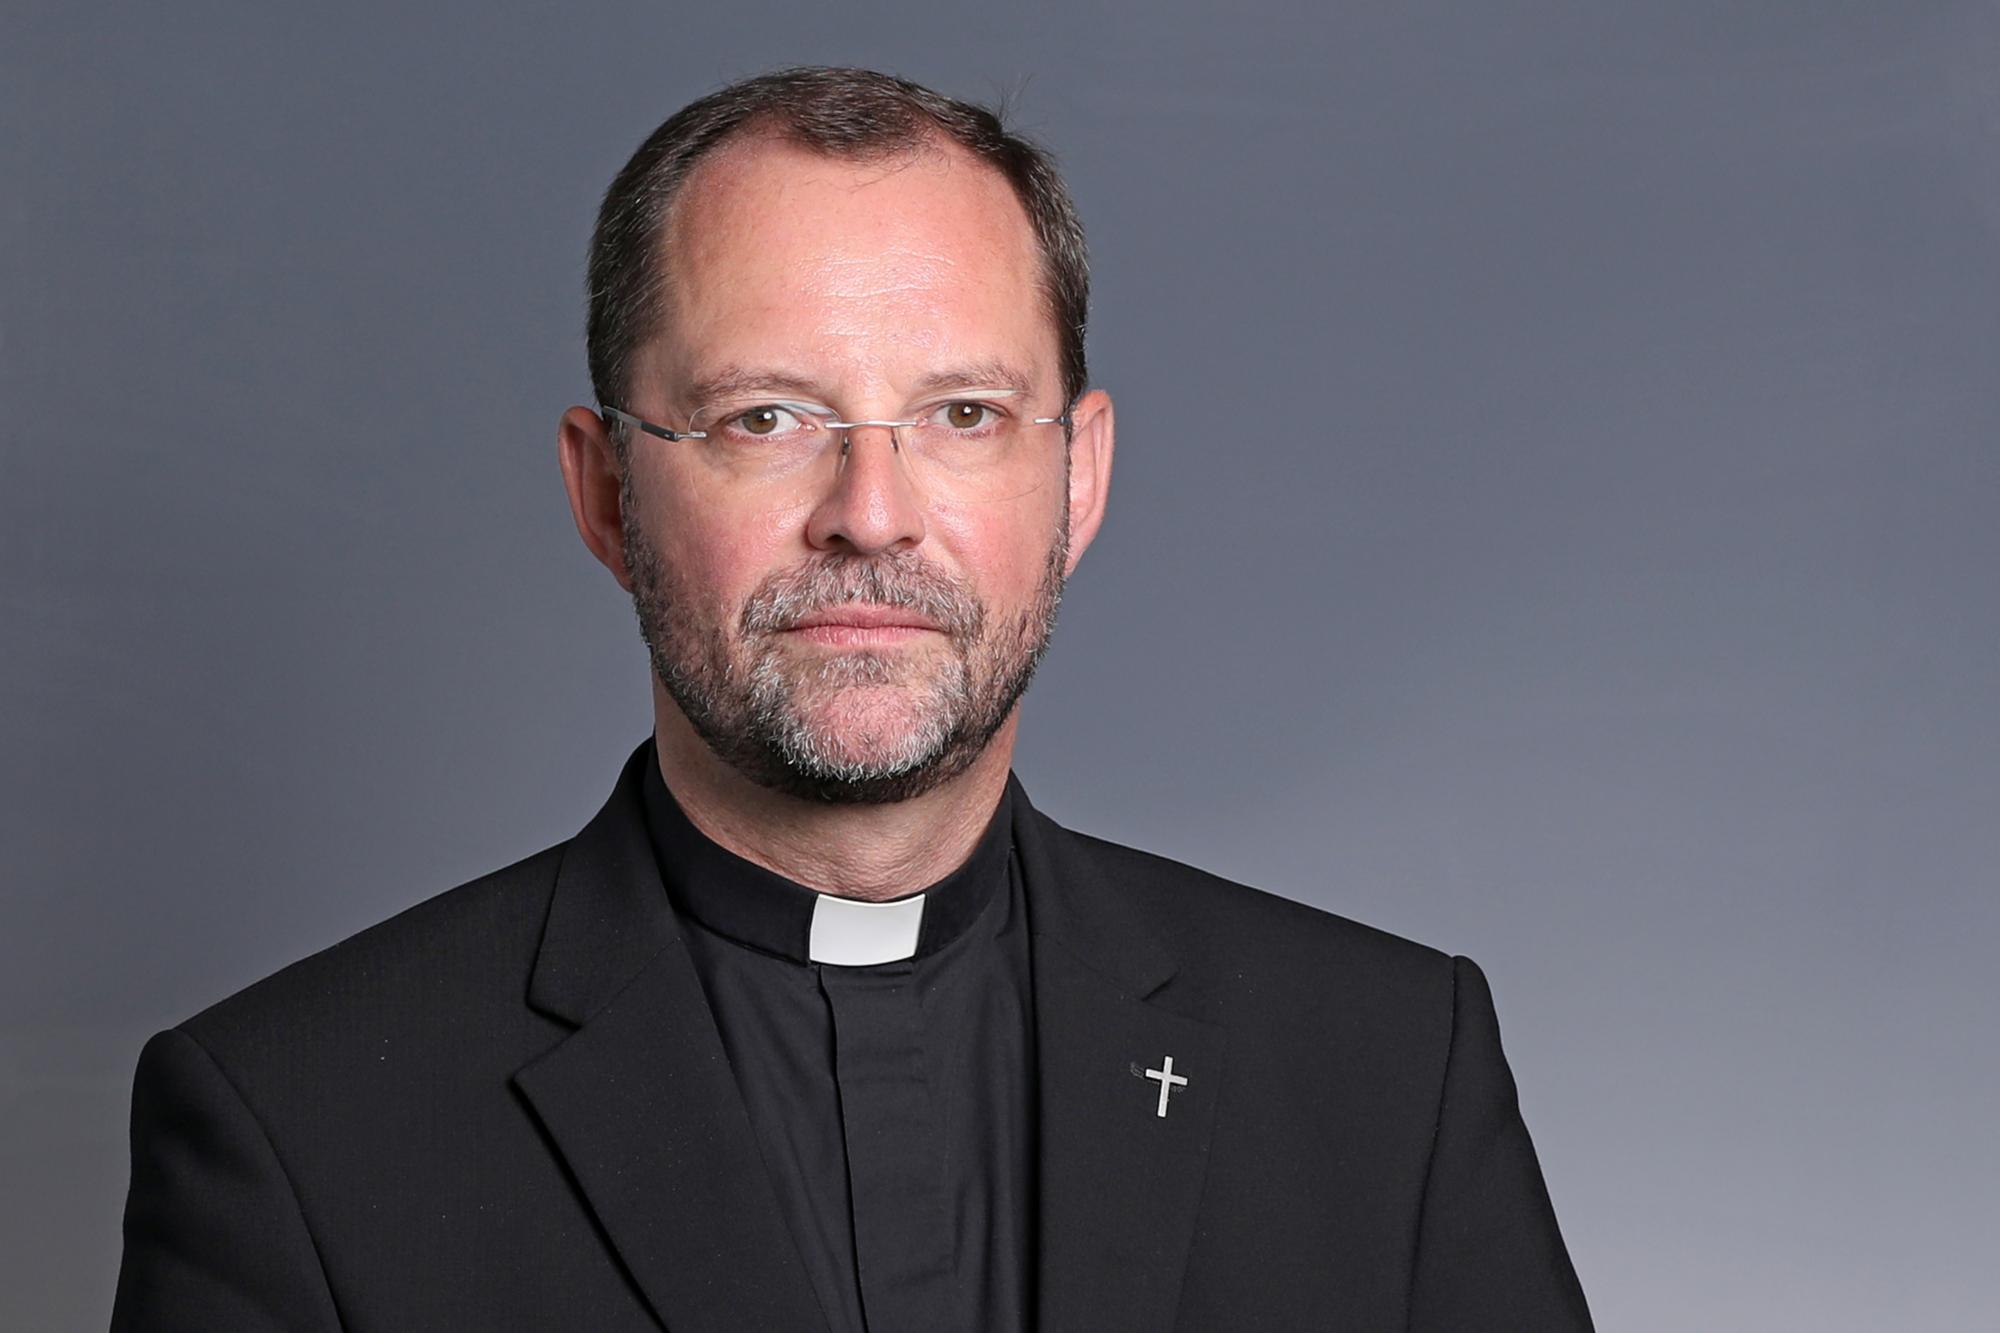 Generalvikar Dr. Andres Frick wendet sich mit einem Brief an die Mitarbeitenden und Priester im Bistum Aachen.